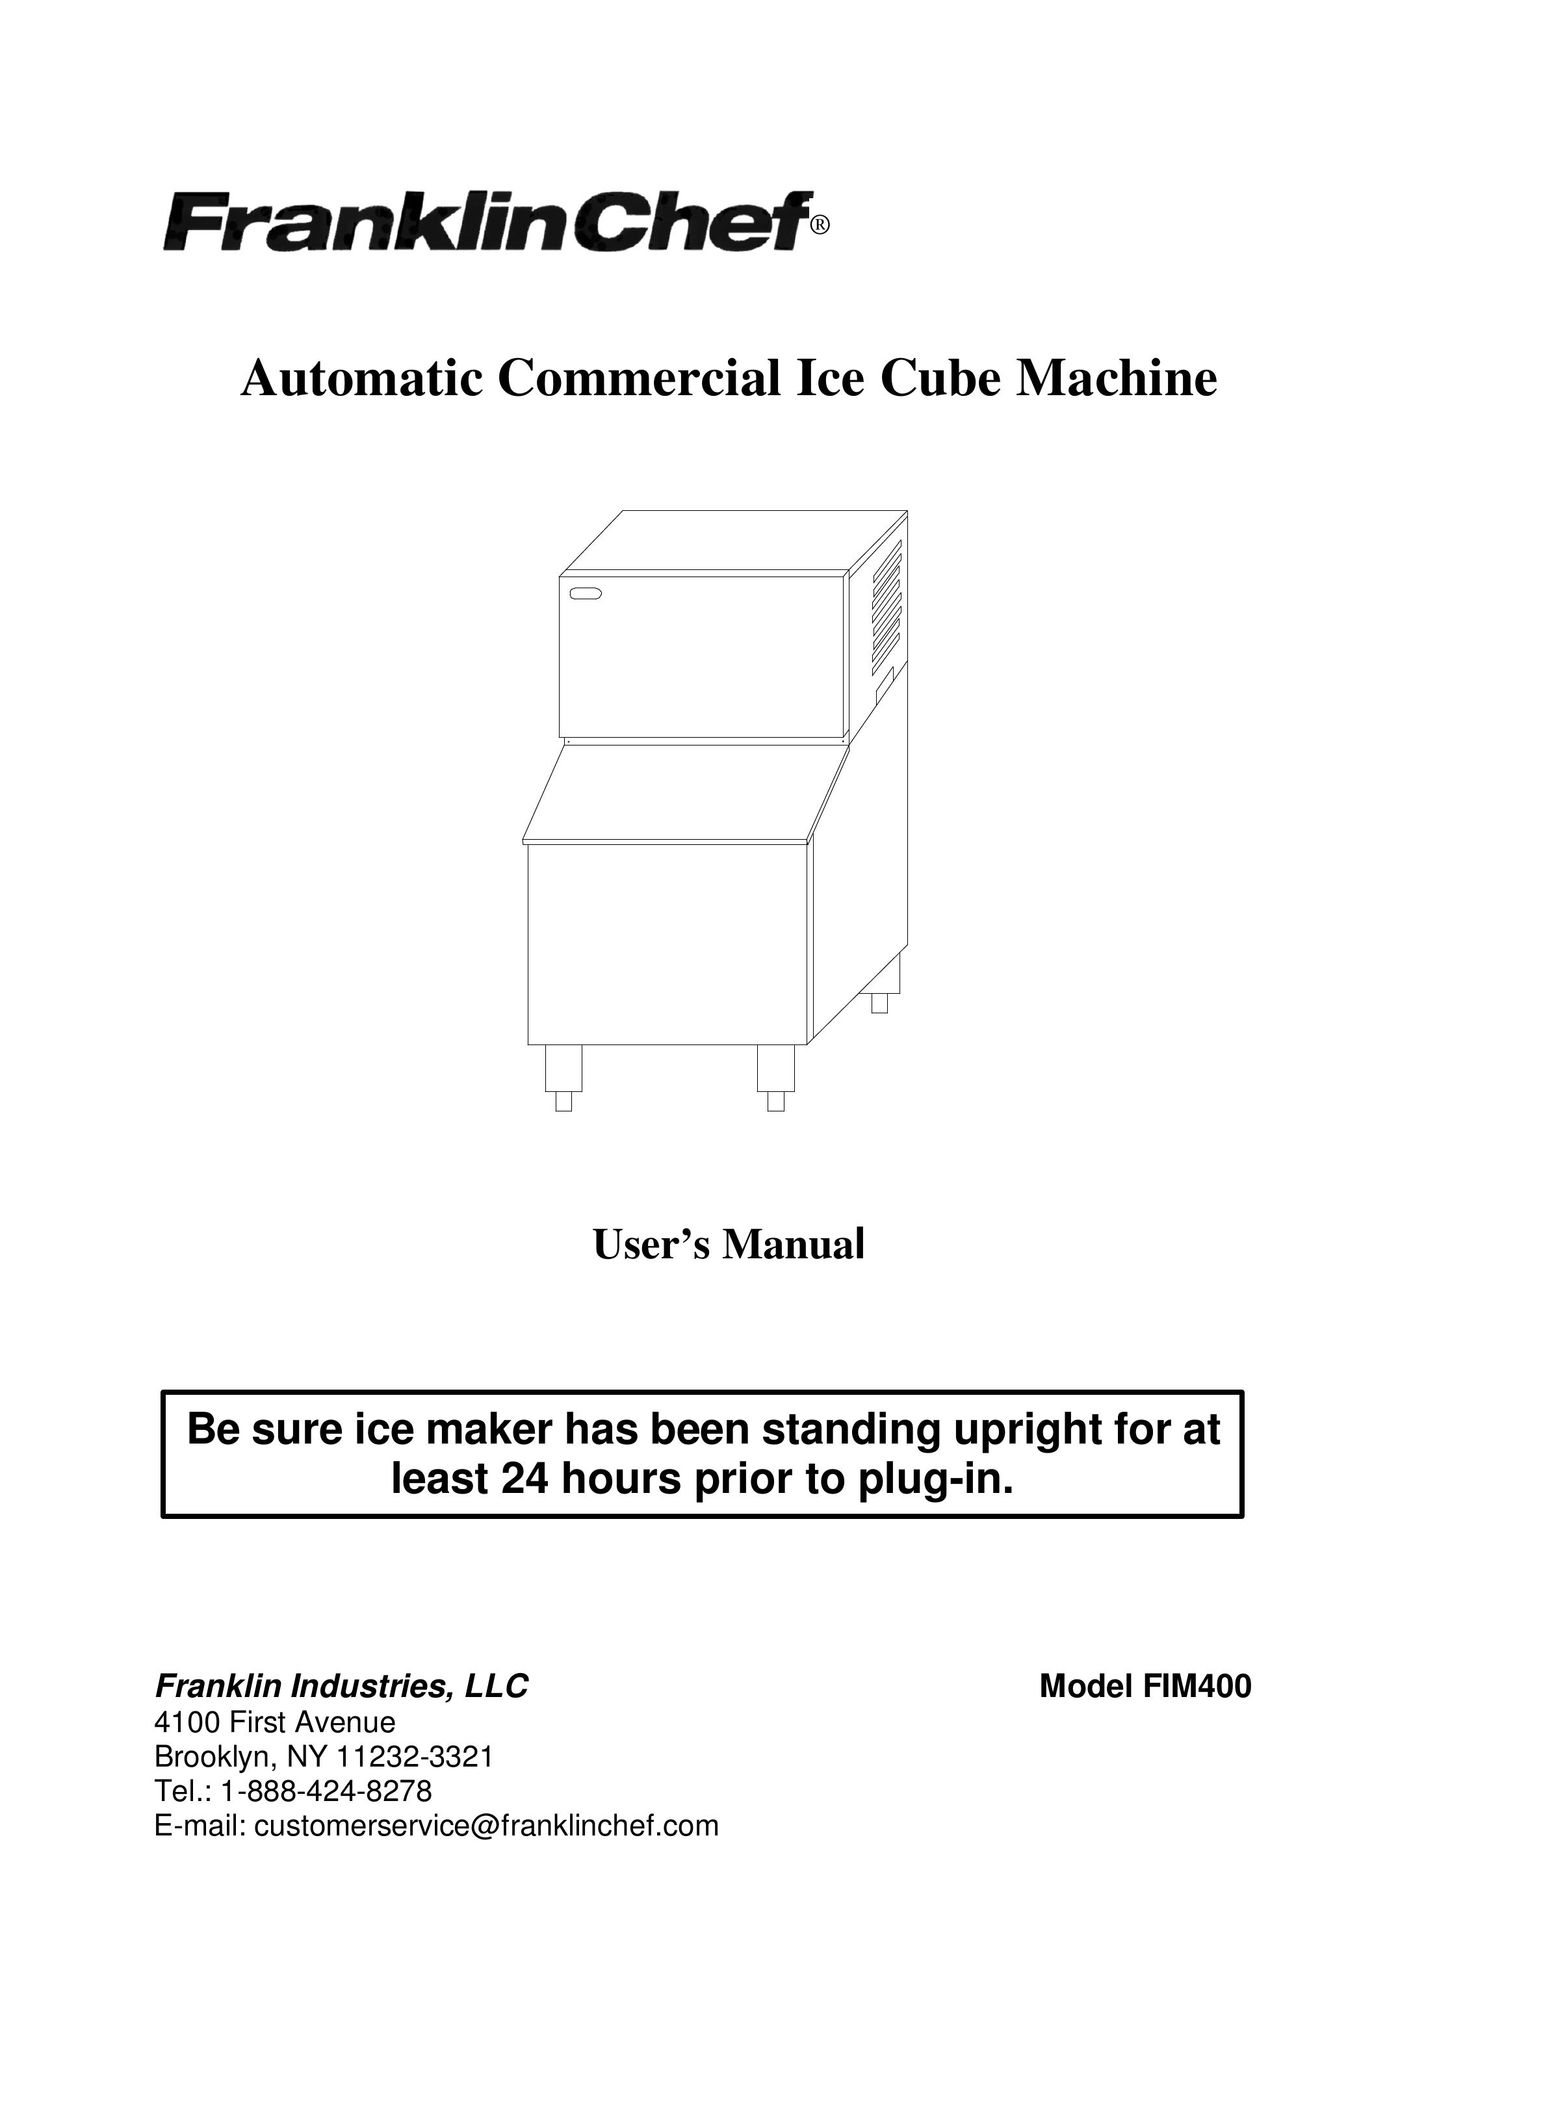 Franklin Industries, L.L.C. FIM400 Ice Maker User Manual